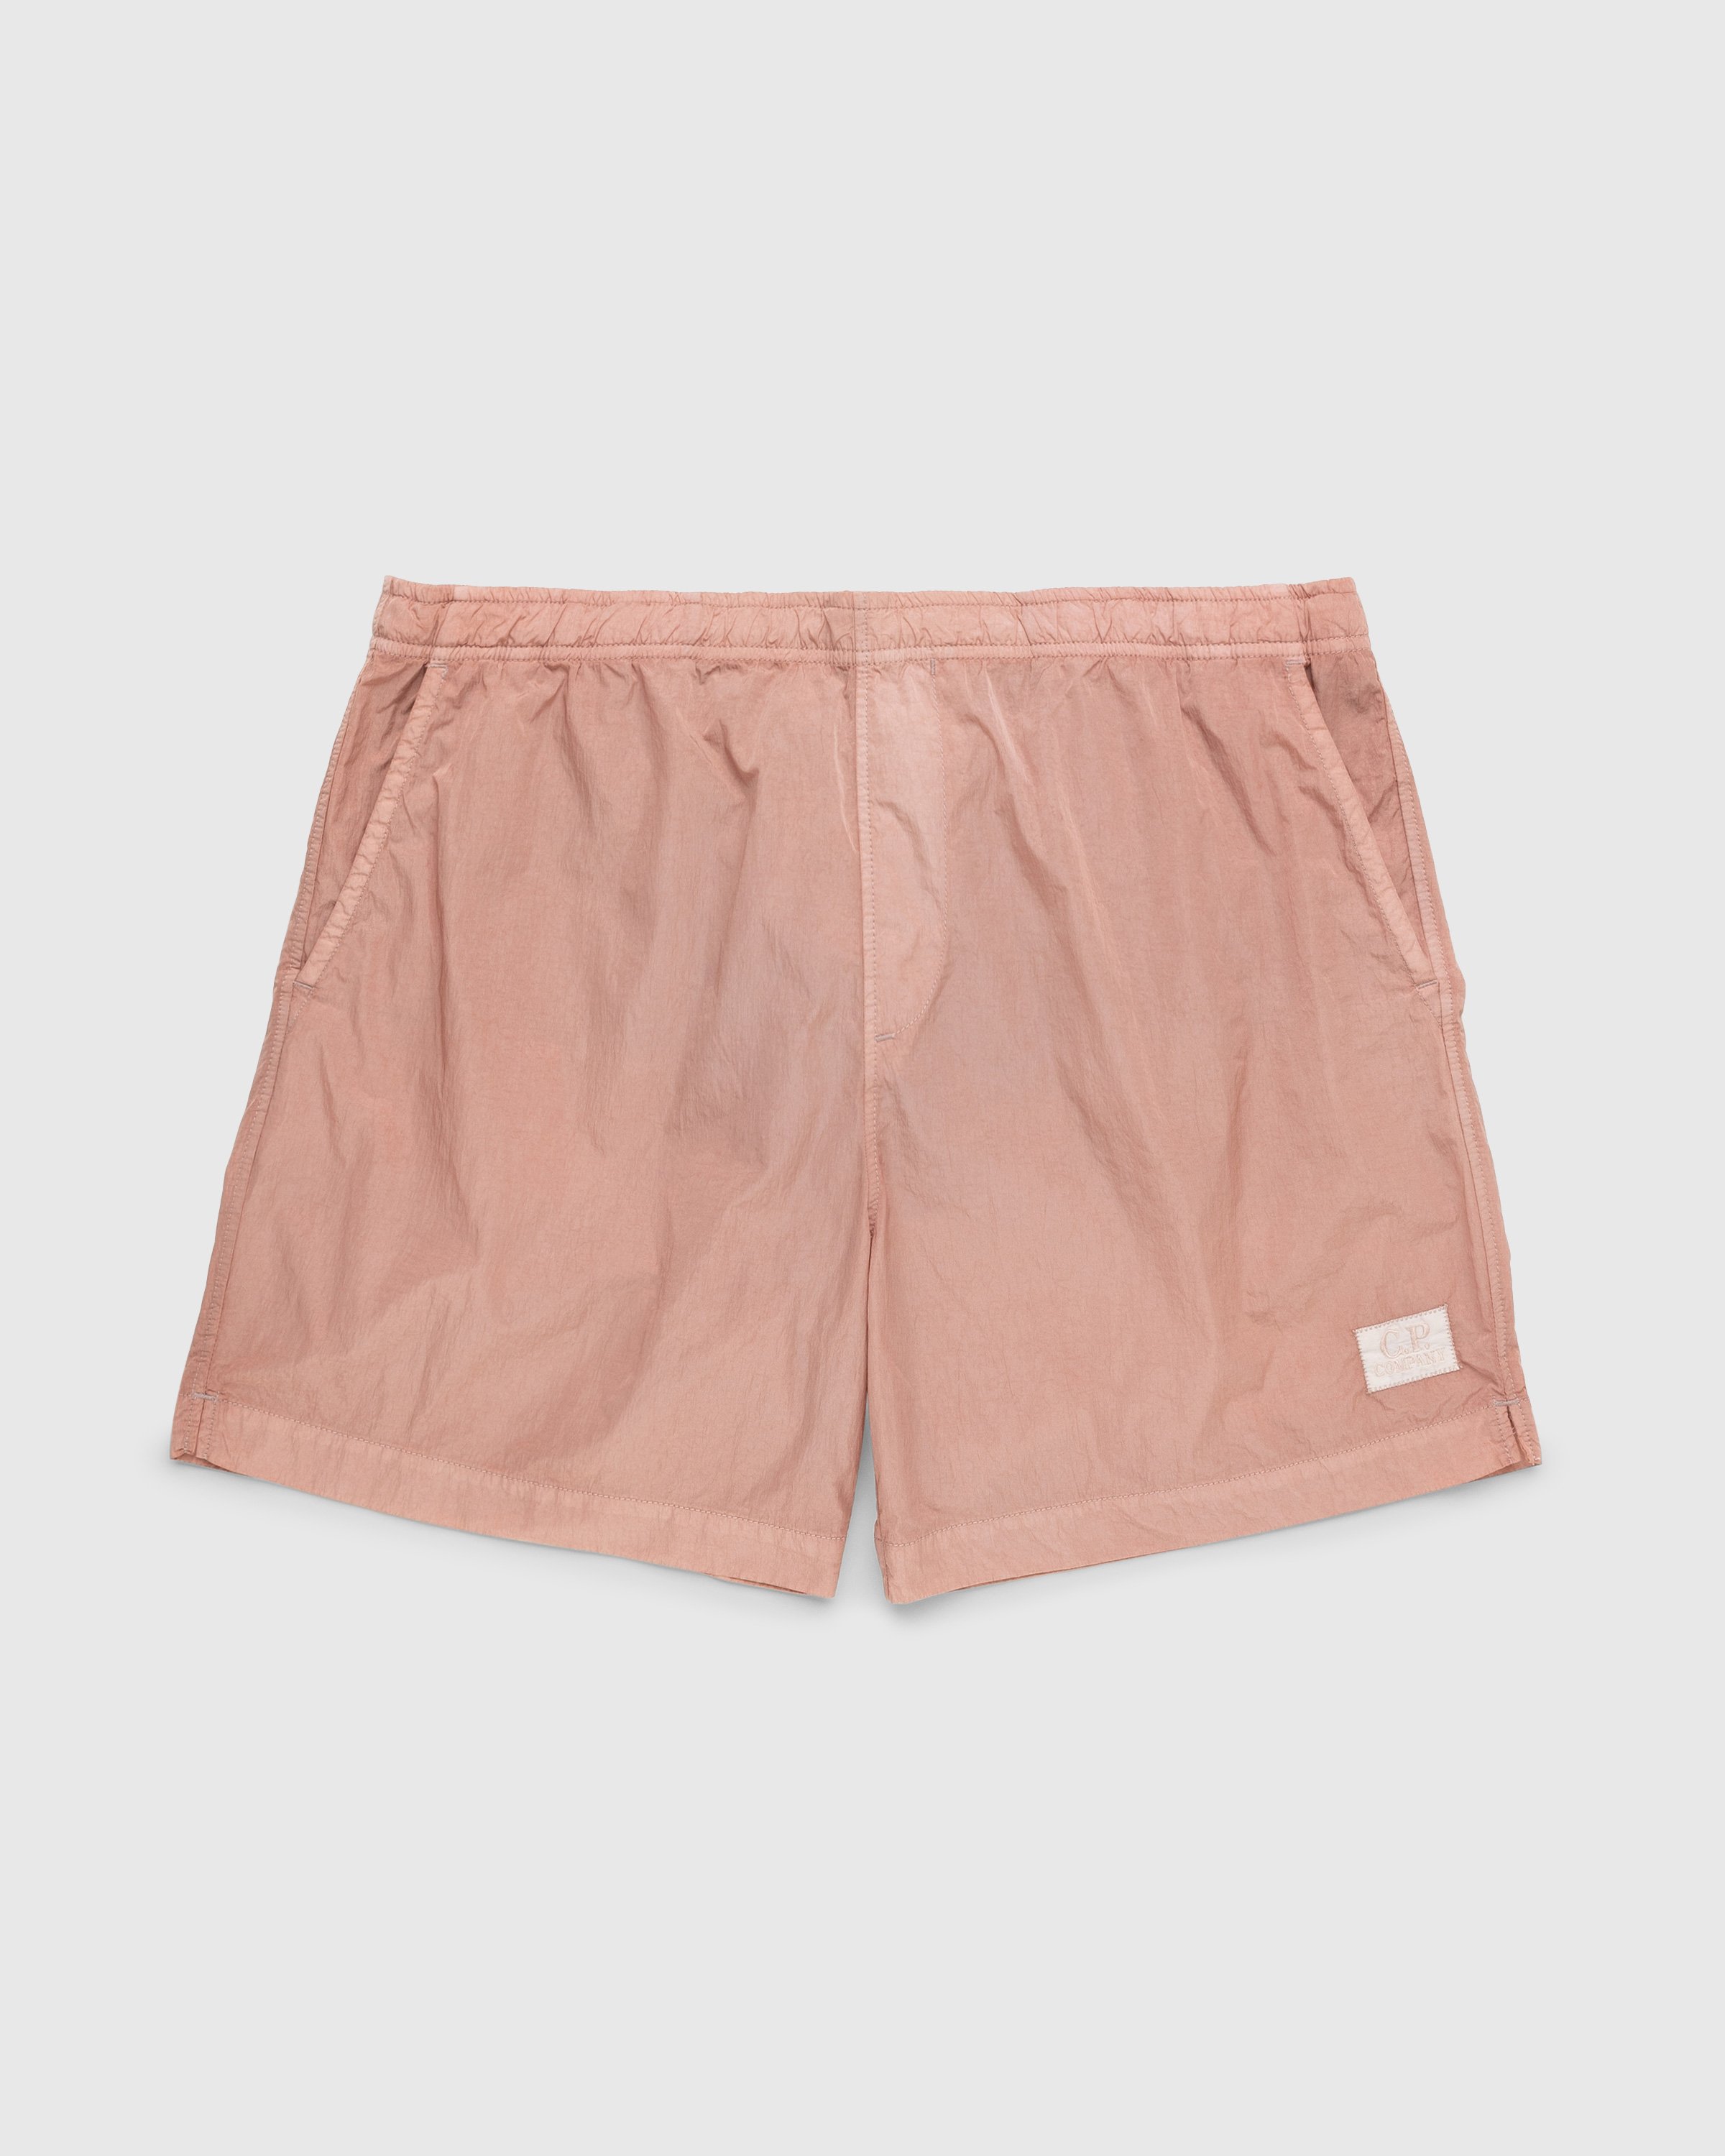 C.P. Company - Eco-Chrome Swim Shorts Pink - Clothing - Pink - Image 1